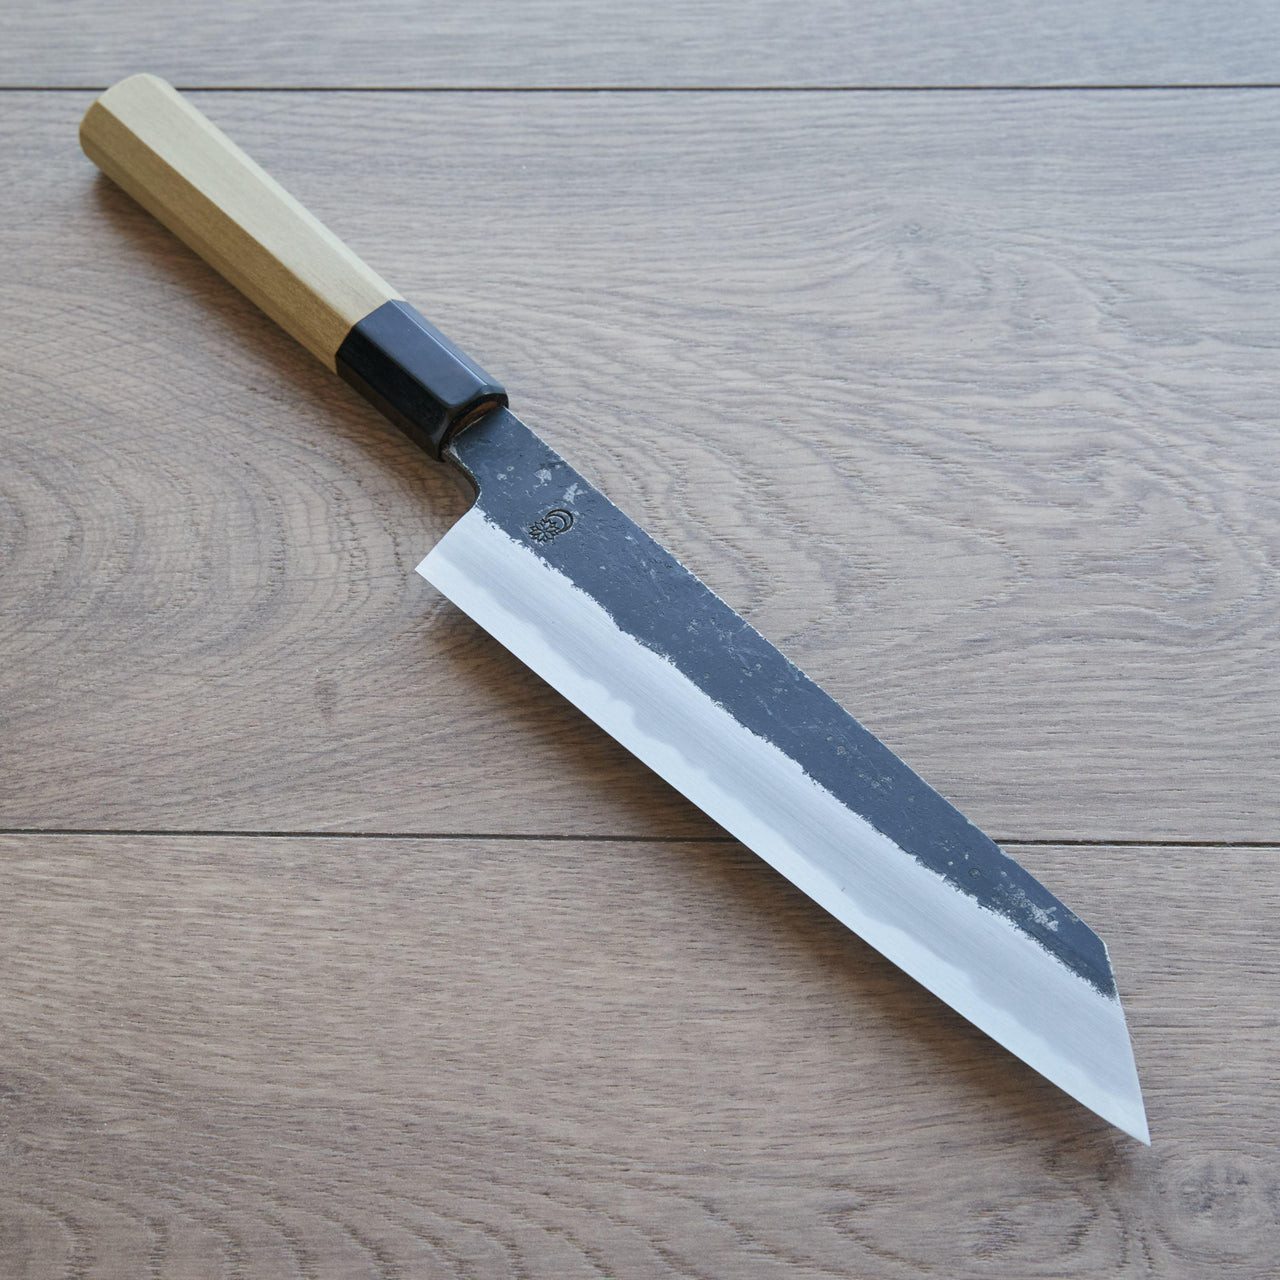 Sakai Kikumori Kikuzuki Kurouchi Kiritsuke Gyuto 210mm-Knife-Sakai Kikumori-Carbon Knife Co